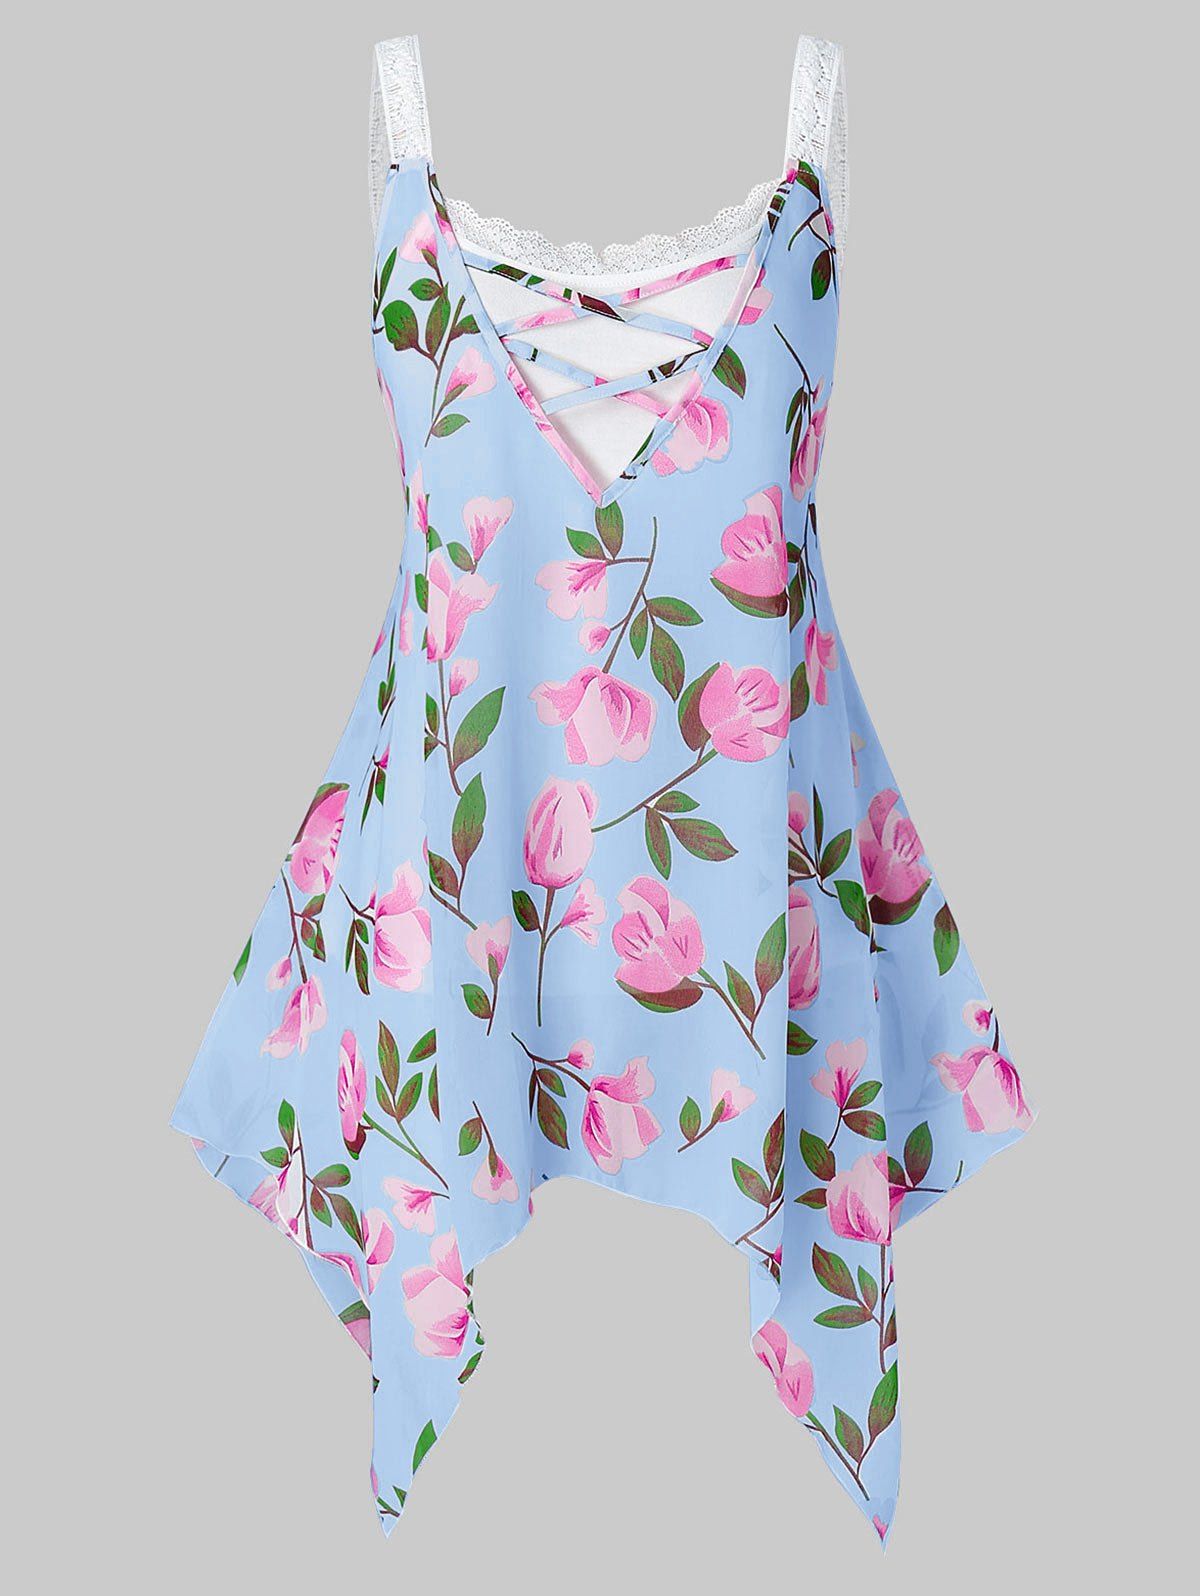 Plus Size Floral Print Lace Cami Tank Top Set - LIGHT BLUE 4X